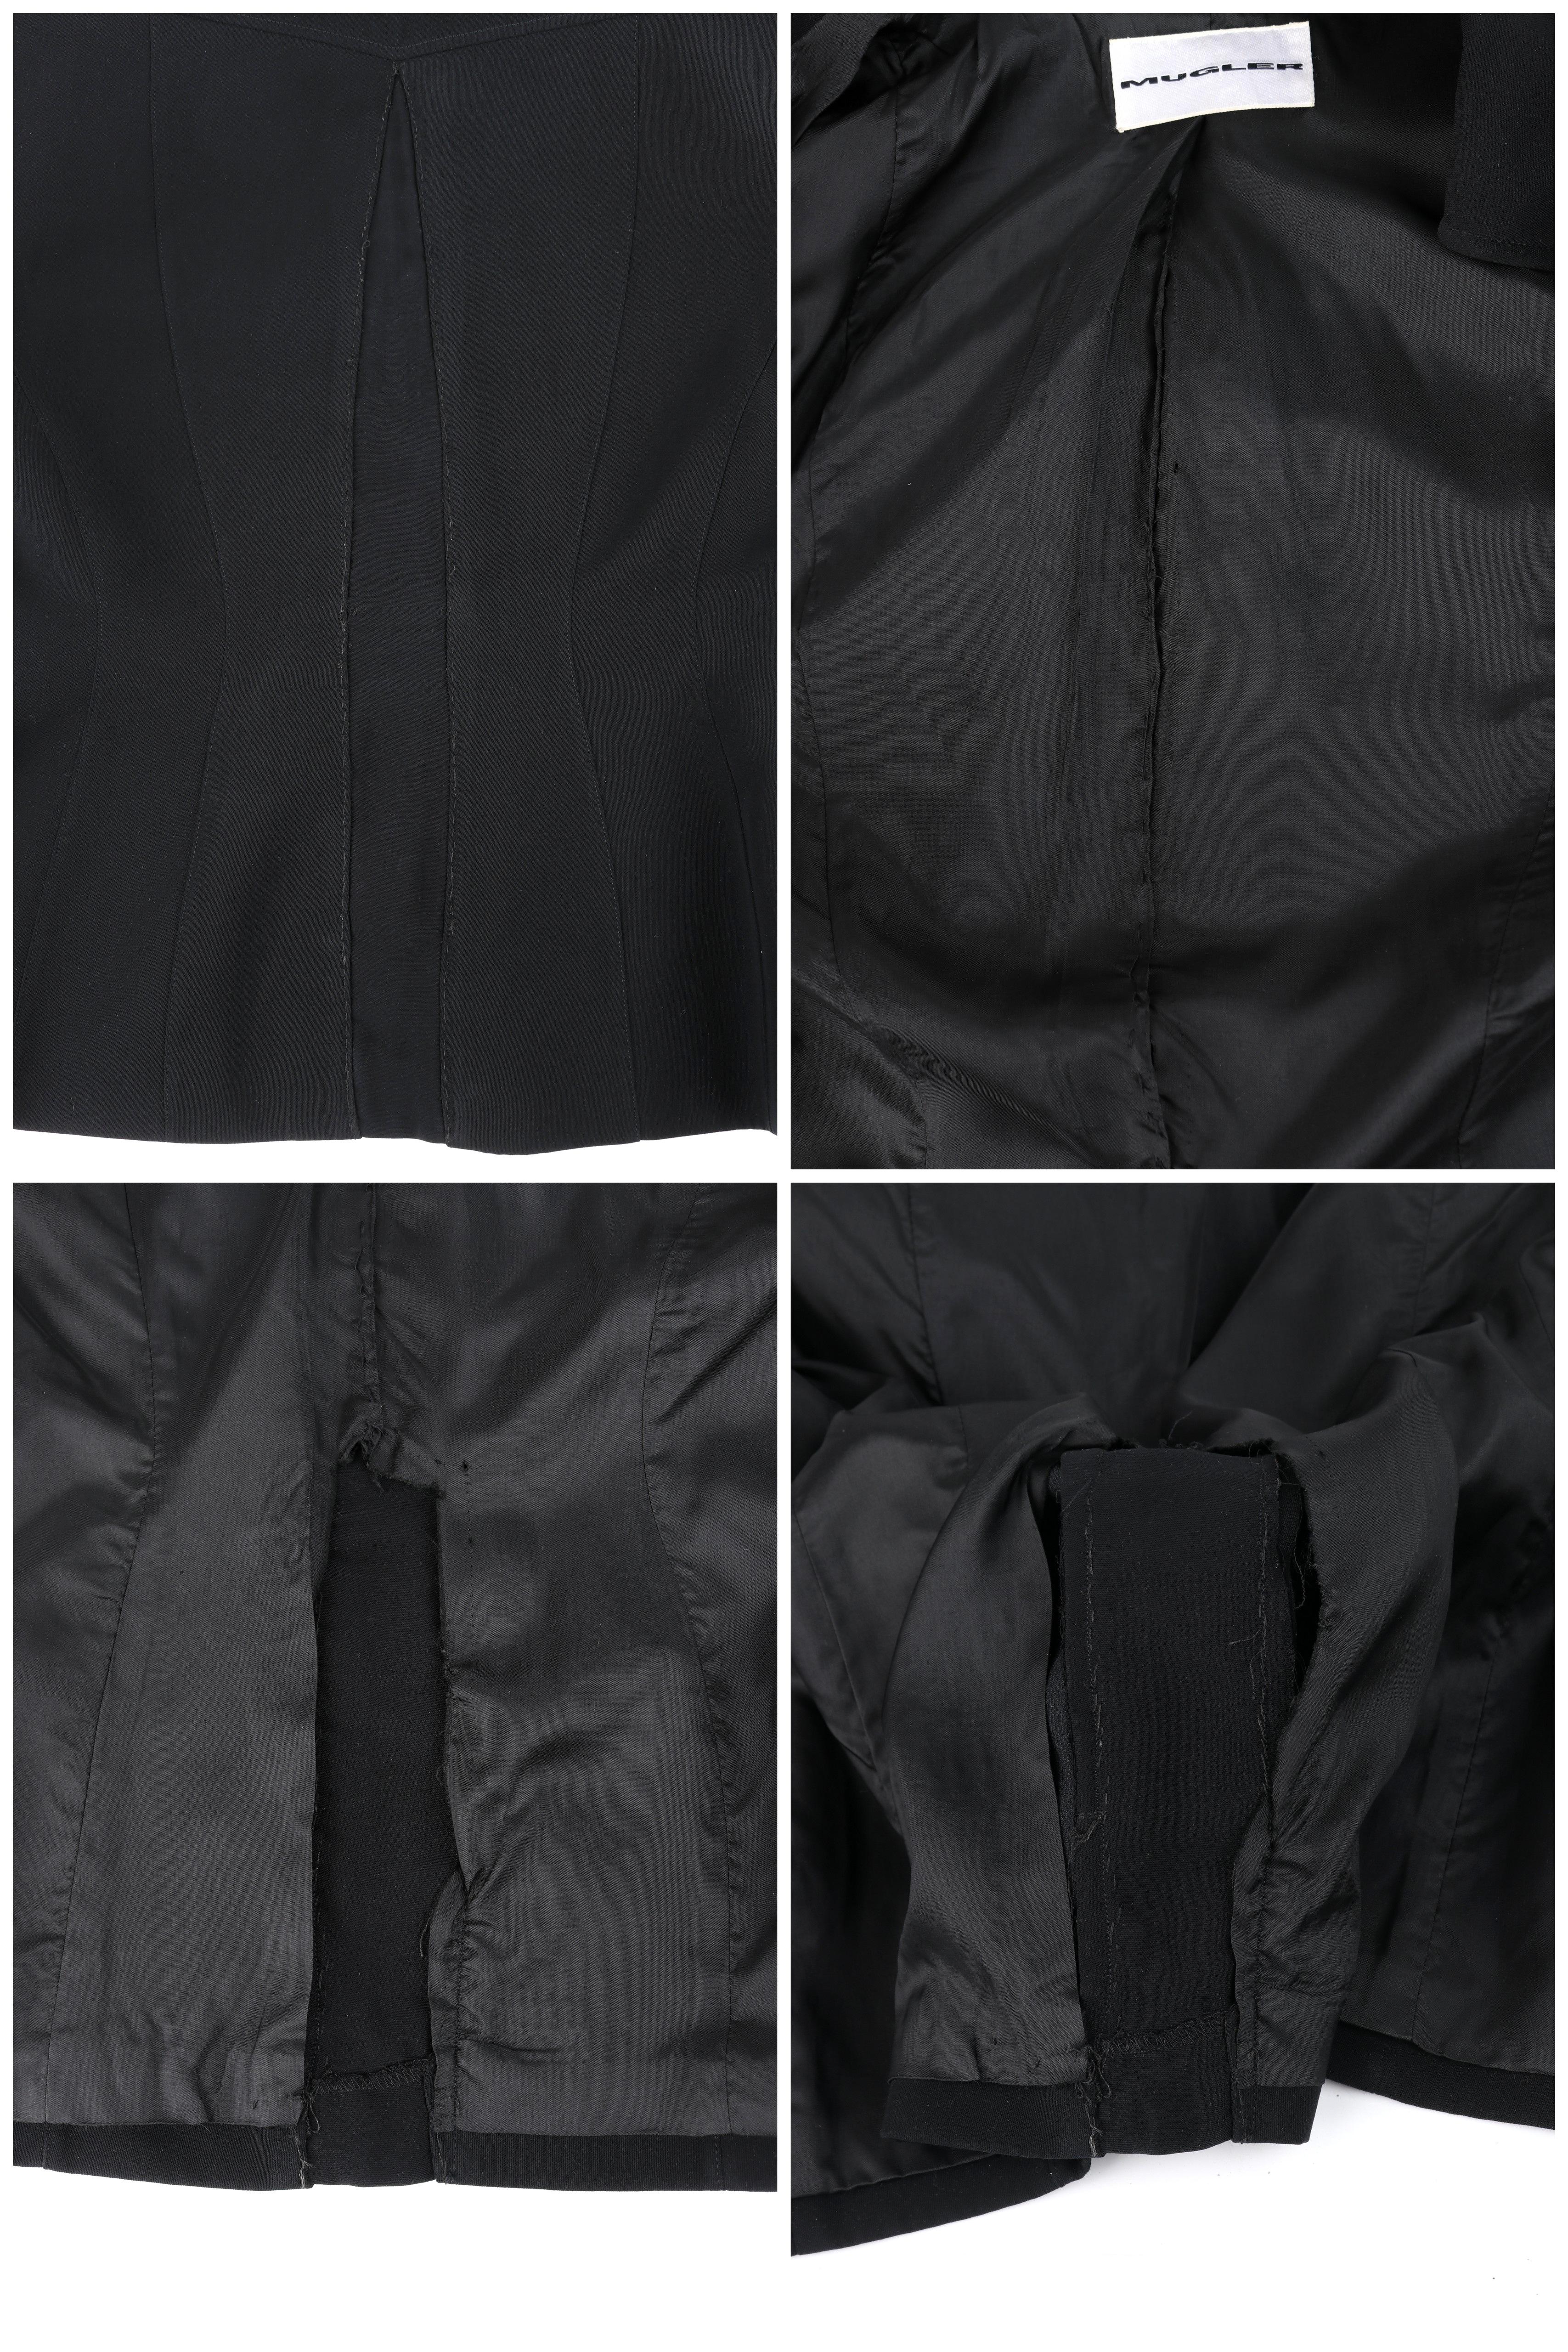 THIERRY MUGLER c.1990's Vtg Black Fringe High Collar Structured Zip Up Jacket  For Sale 8